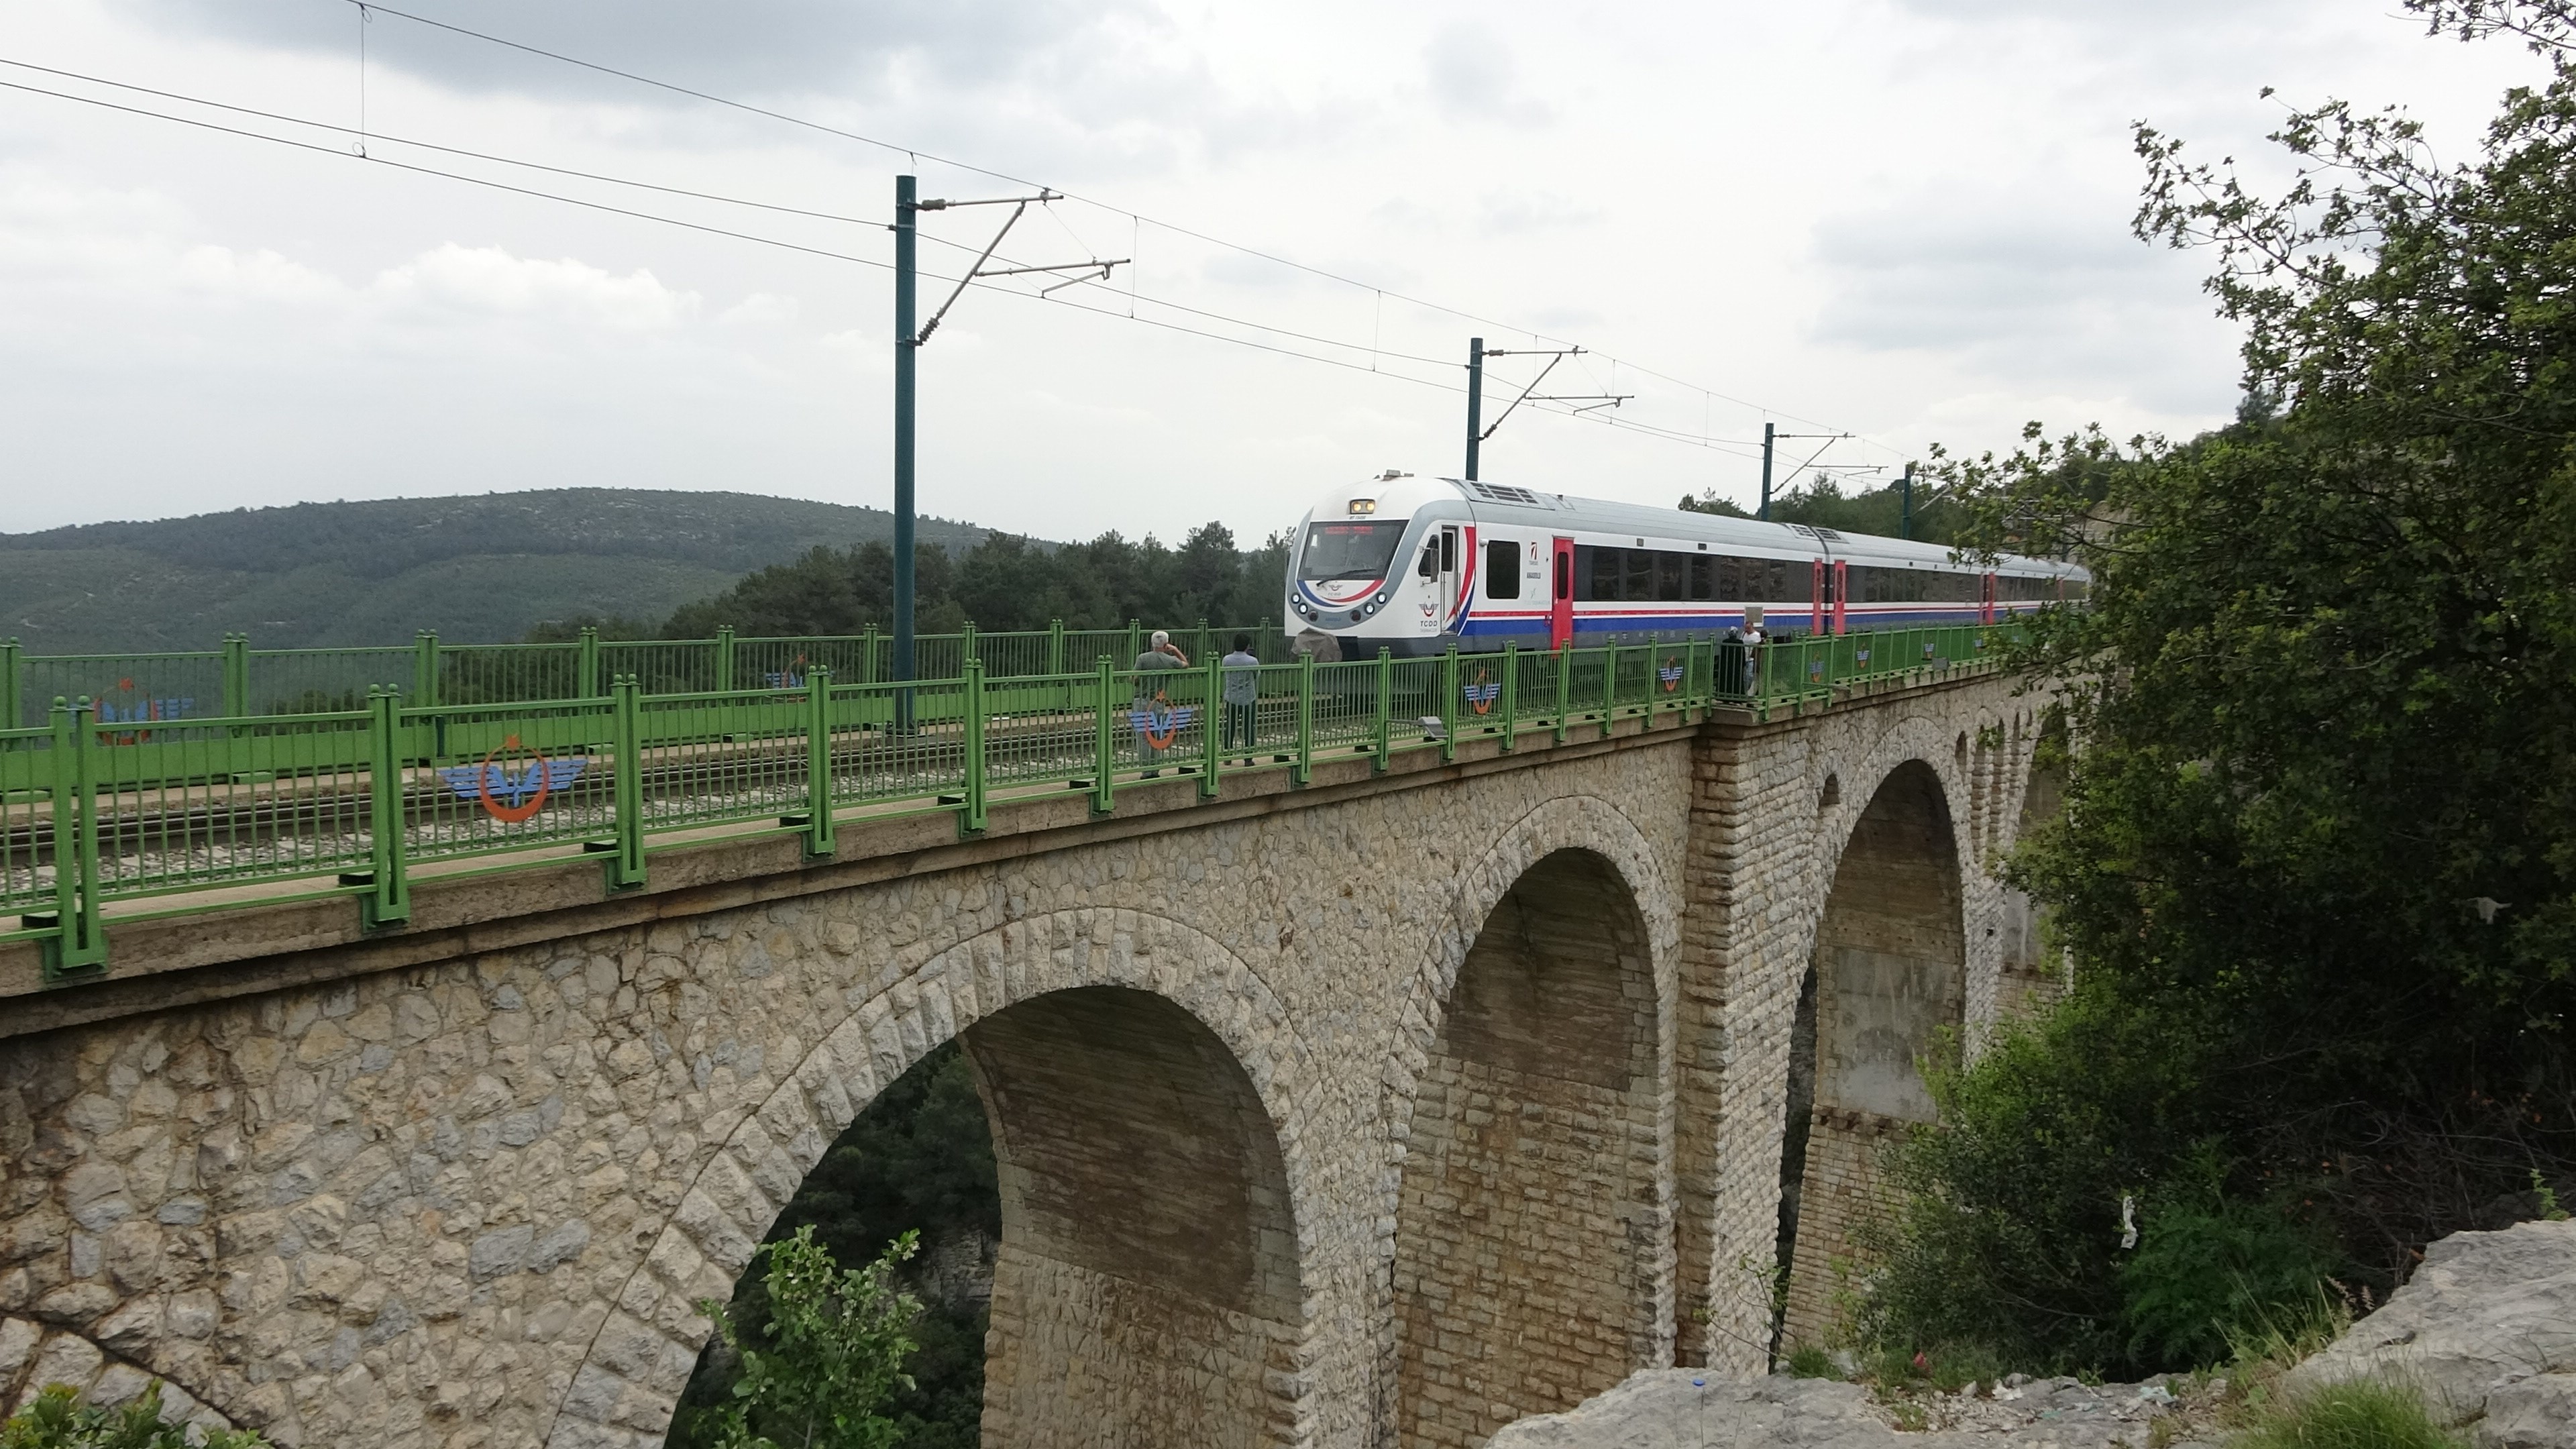 Adana ve Mersin'den Belemedik'e turistik tren seferleri başlayacak